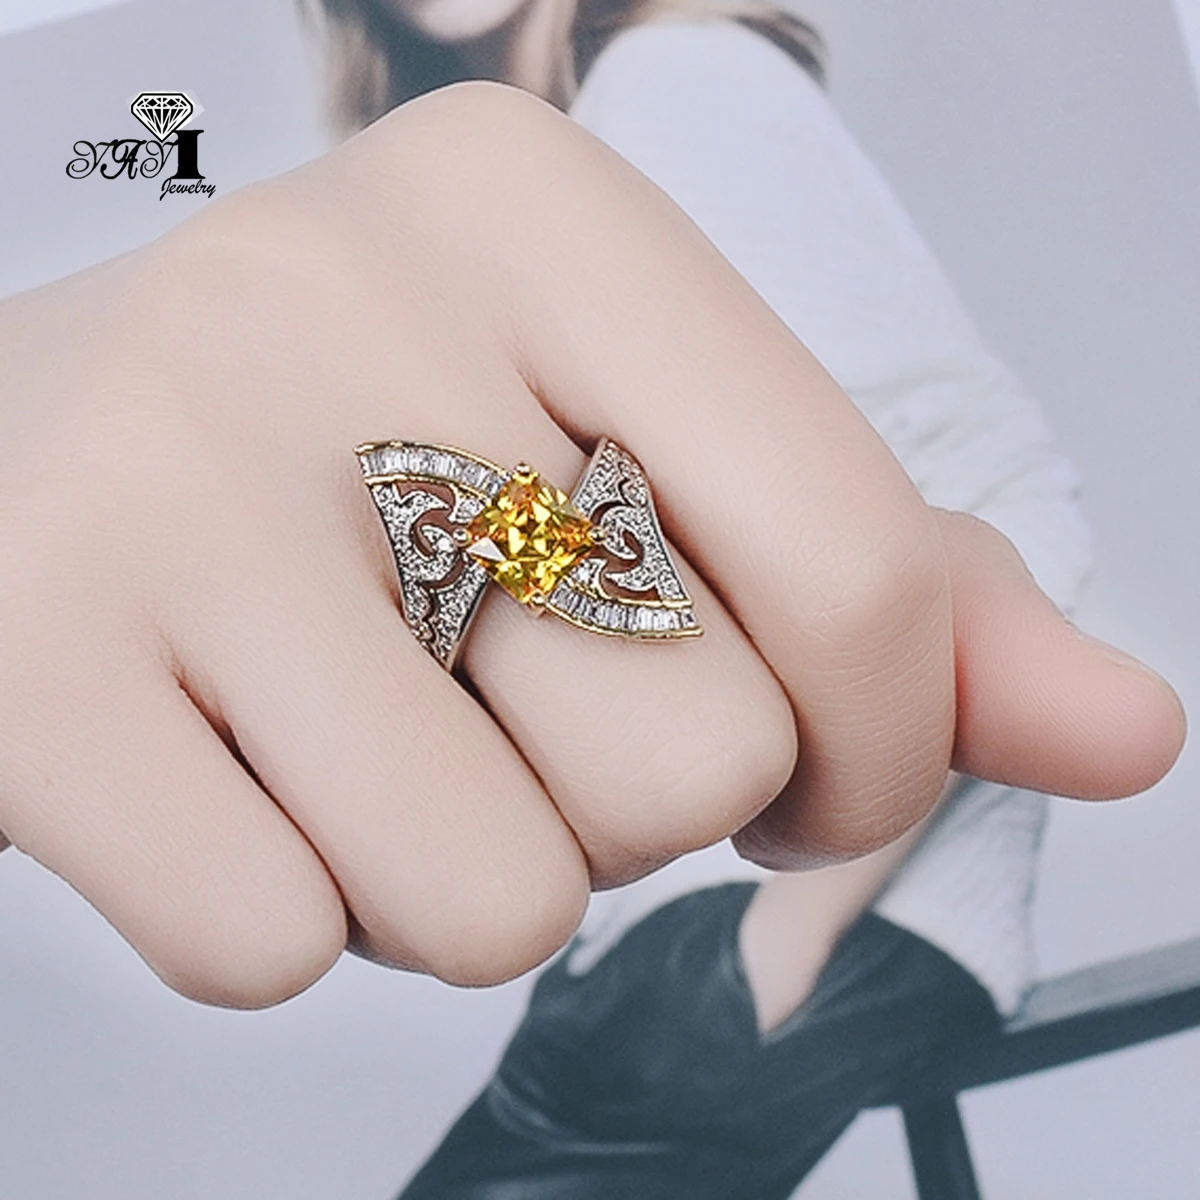 YaYI ювелирные изделия Мода Принцесса Cut 5,9 CT желтый циркон серебряного цвета обручальные кольца Свадебные Кольца Сердце вечерние кольца Подарки 1165